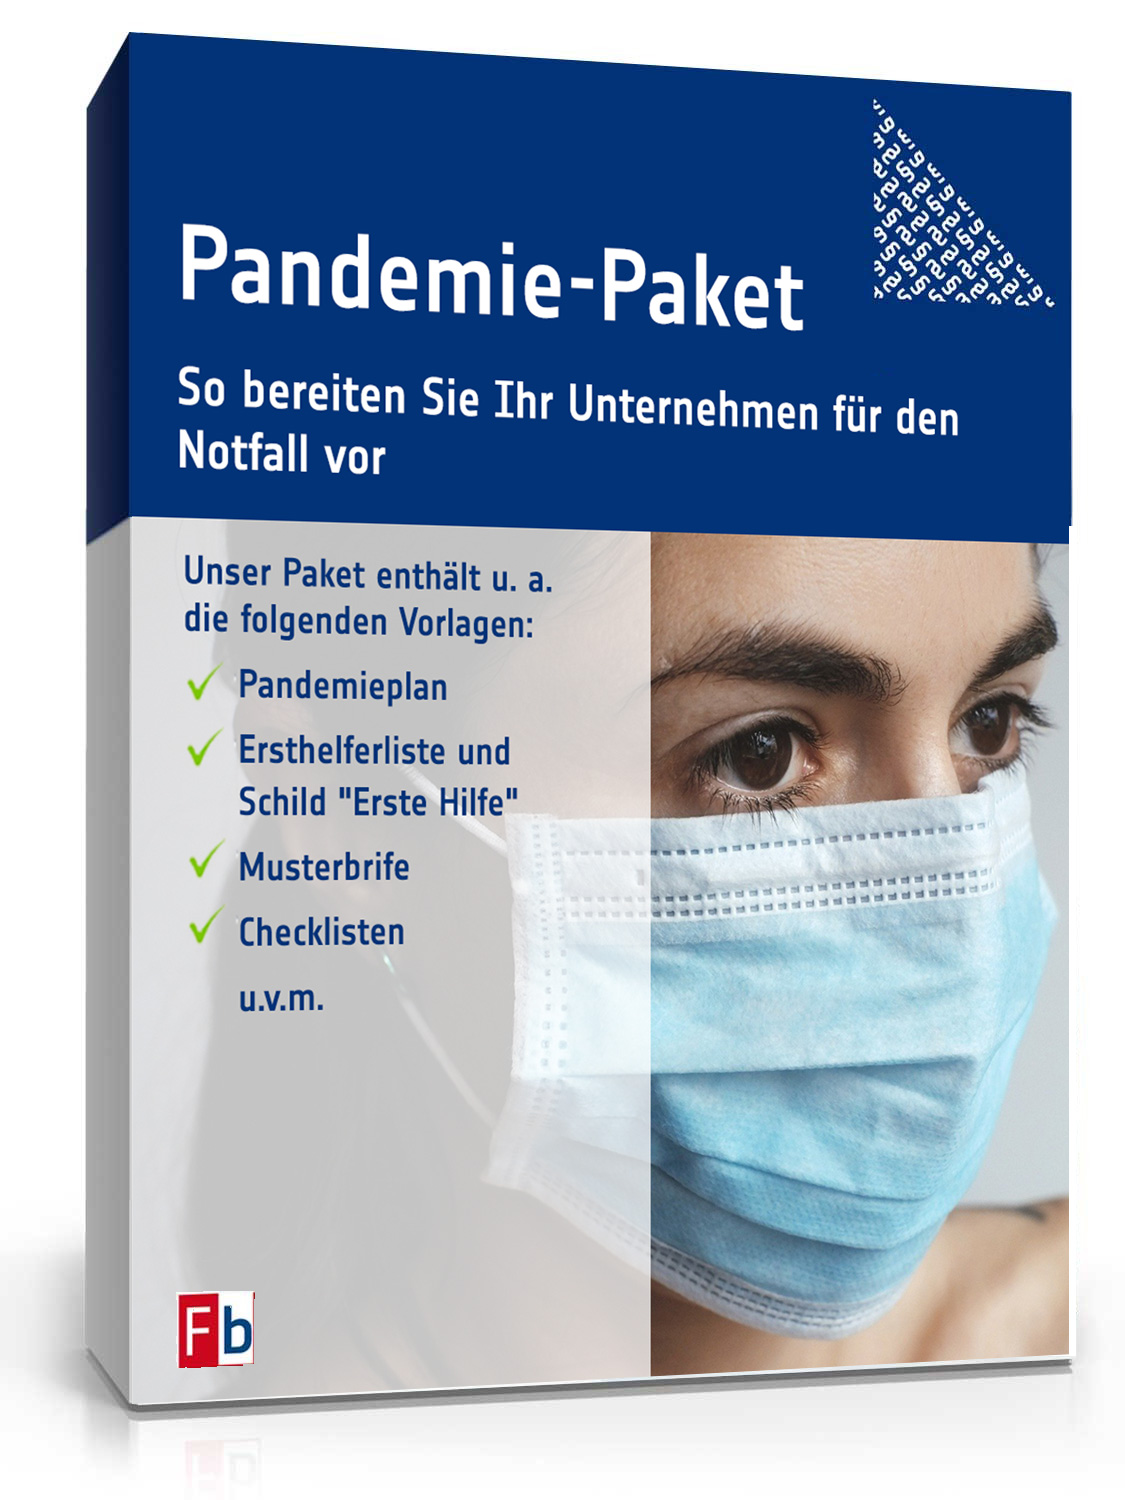 Hauptbild des Produkts: Pandemie-Paket